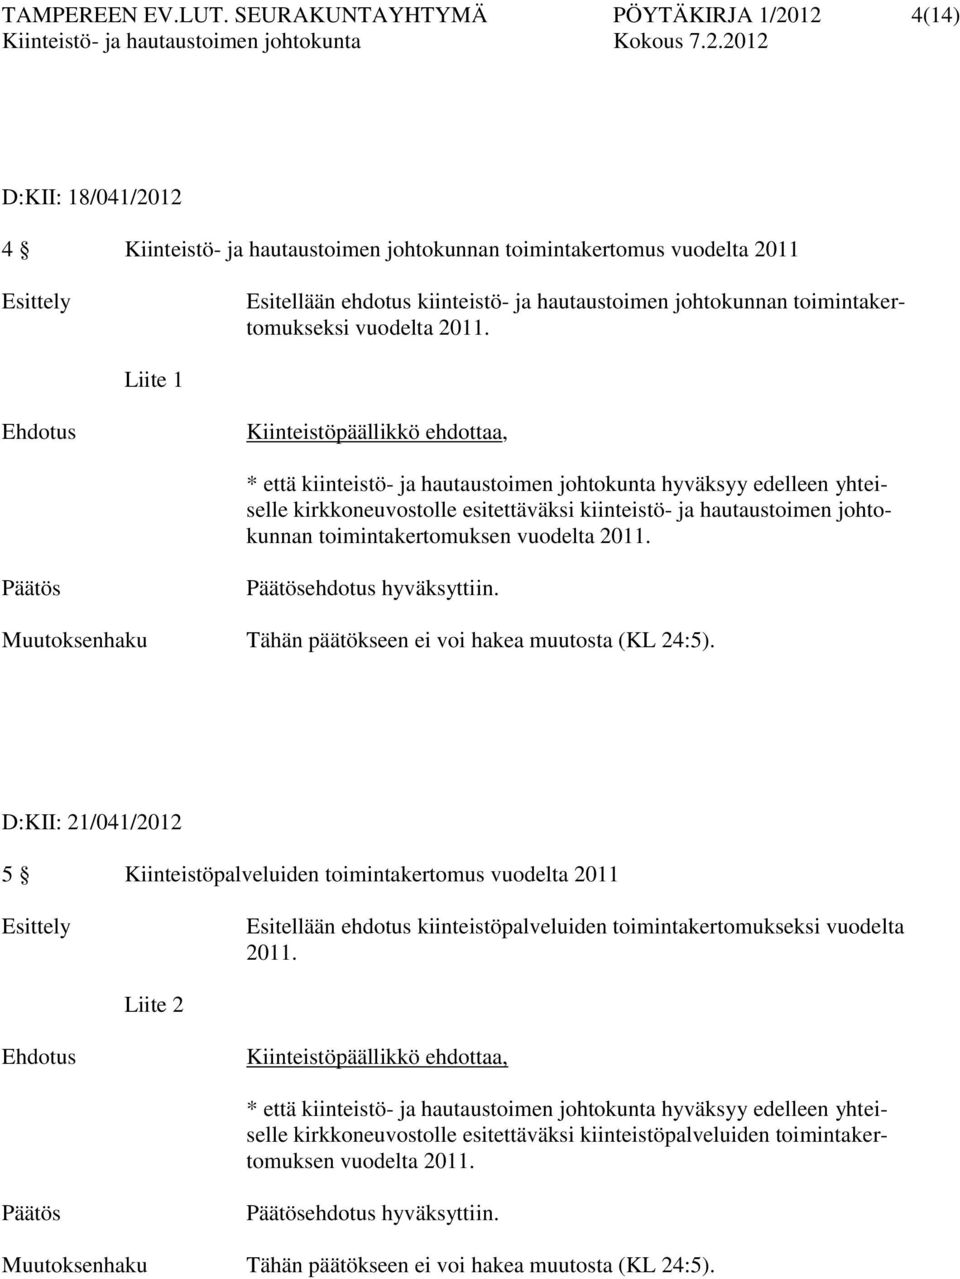 johtokunnan toimintakertomukseksi vuodelta 2011.